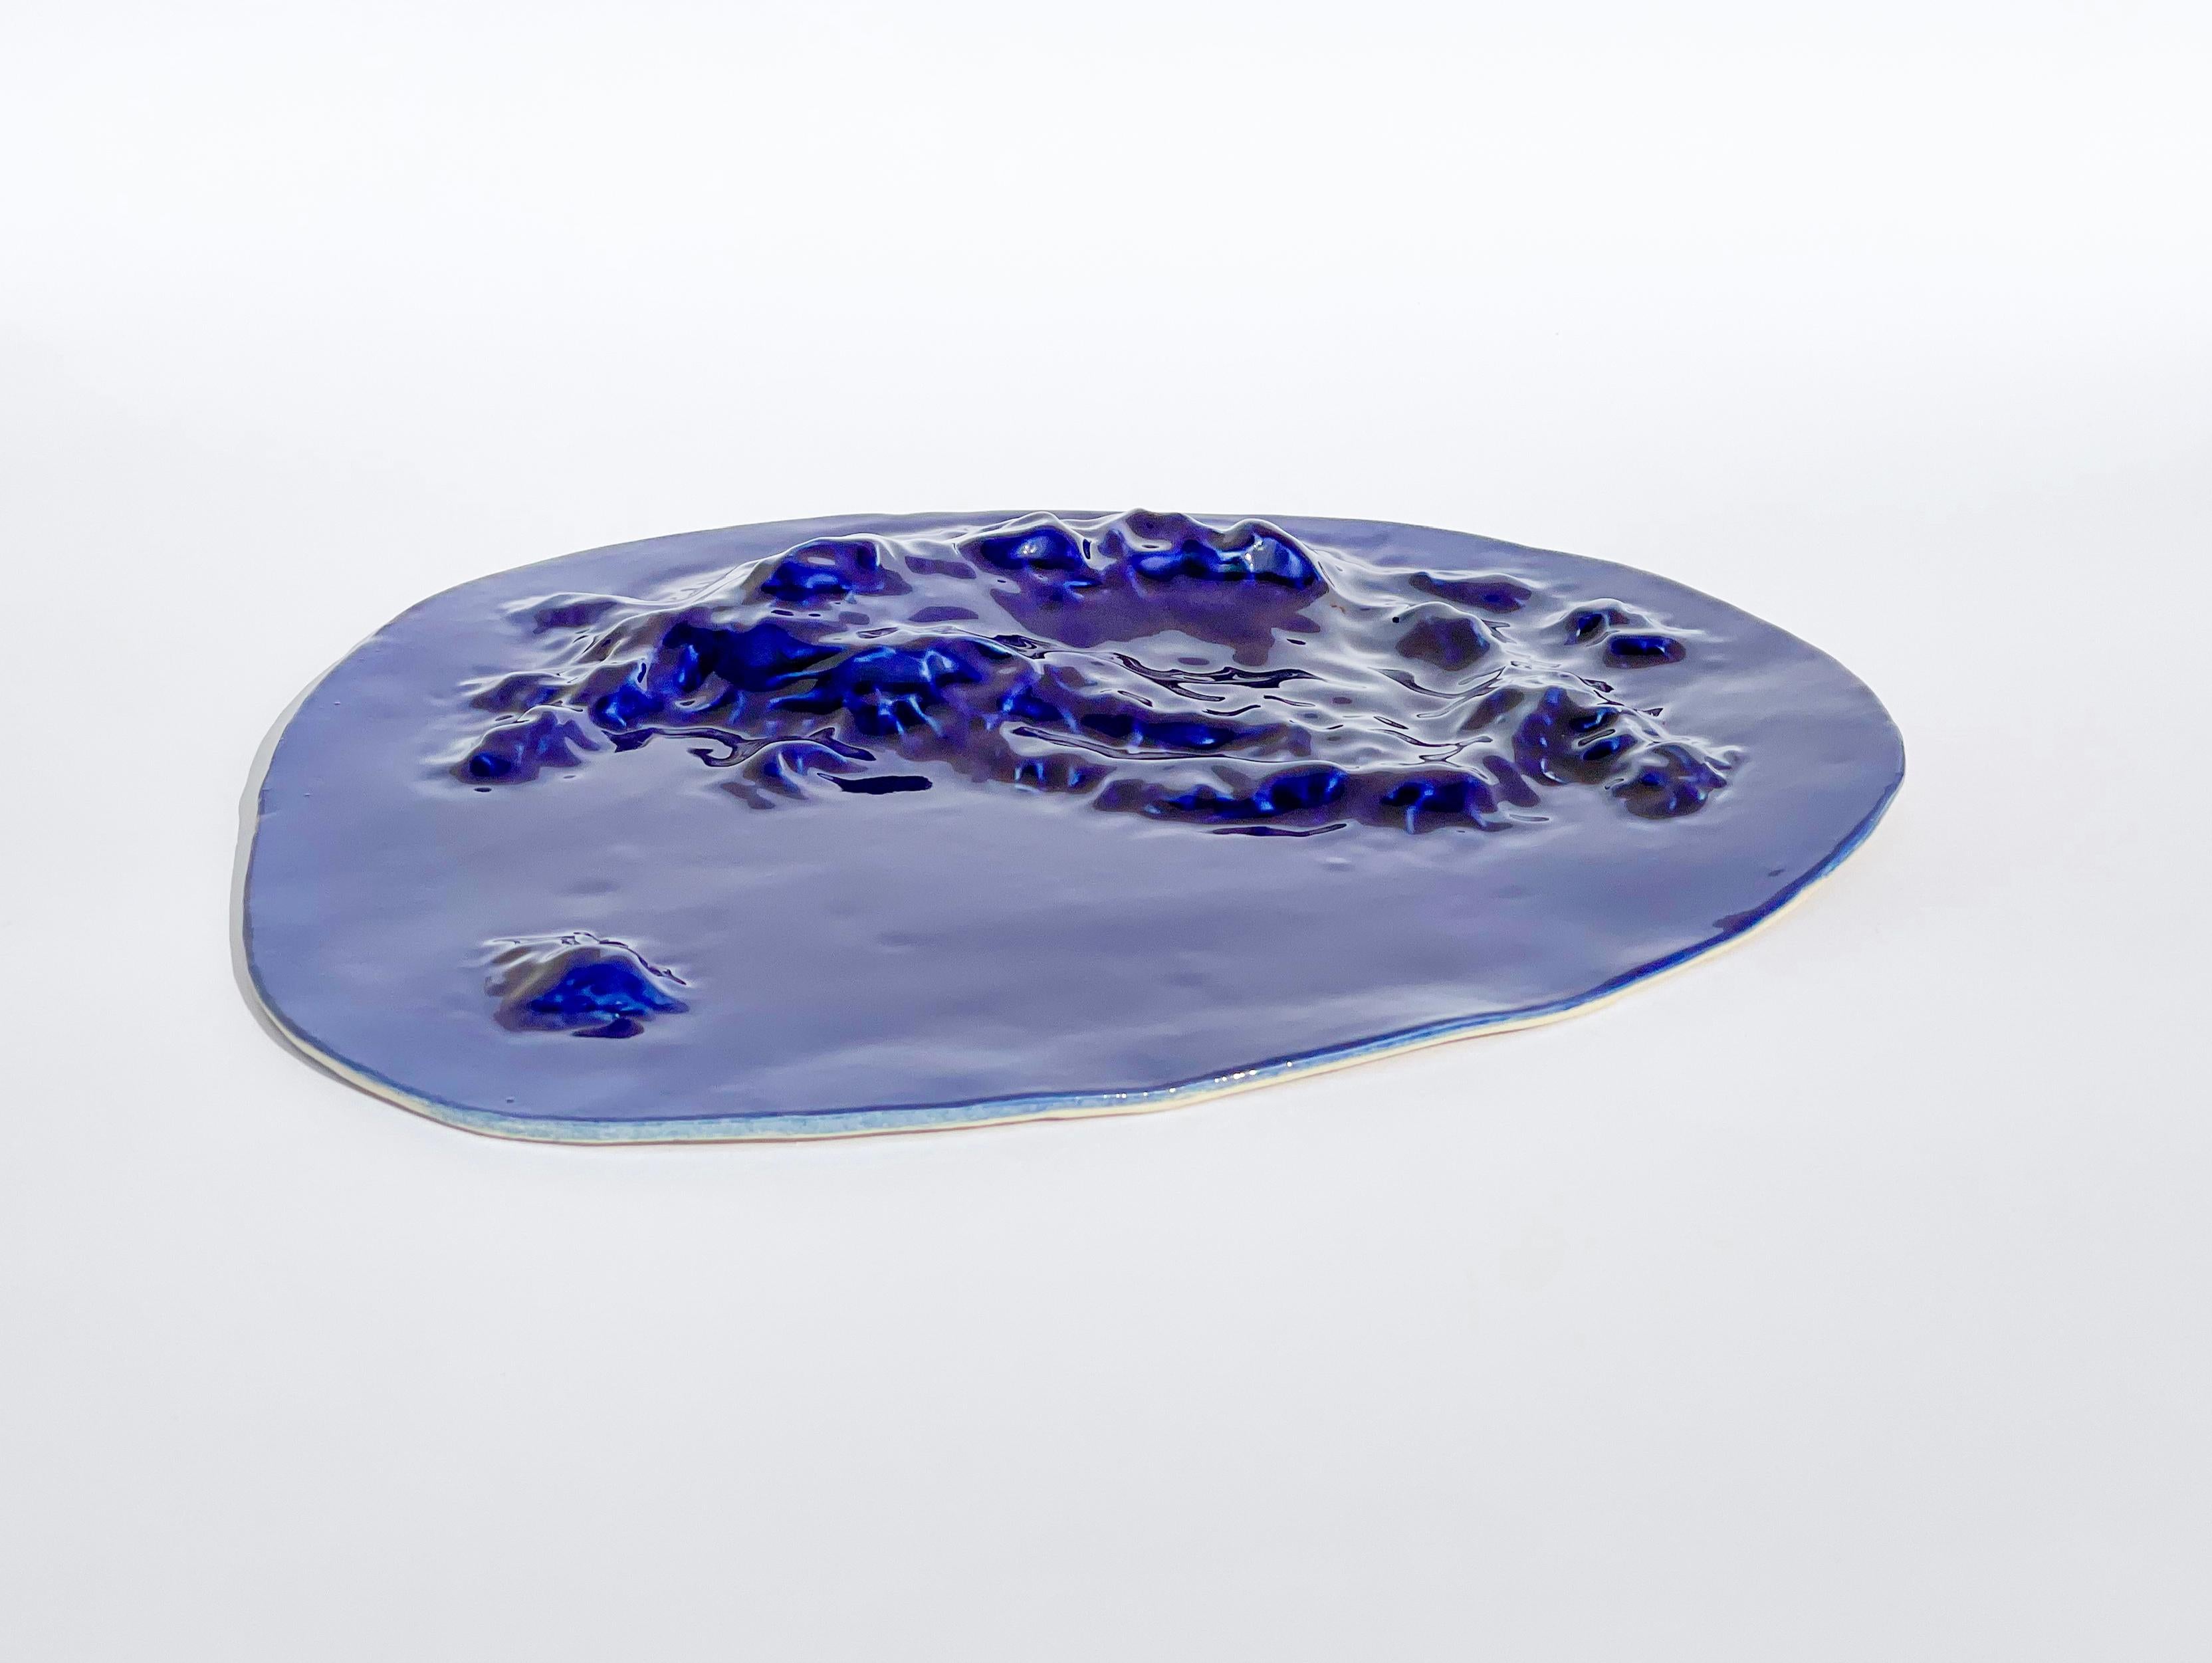 Contemporary Unique Sculptural 'Gongshi' Plates N0.11 Objet d'Art Cobalt Blue For Sale